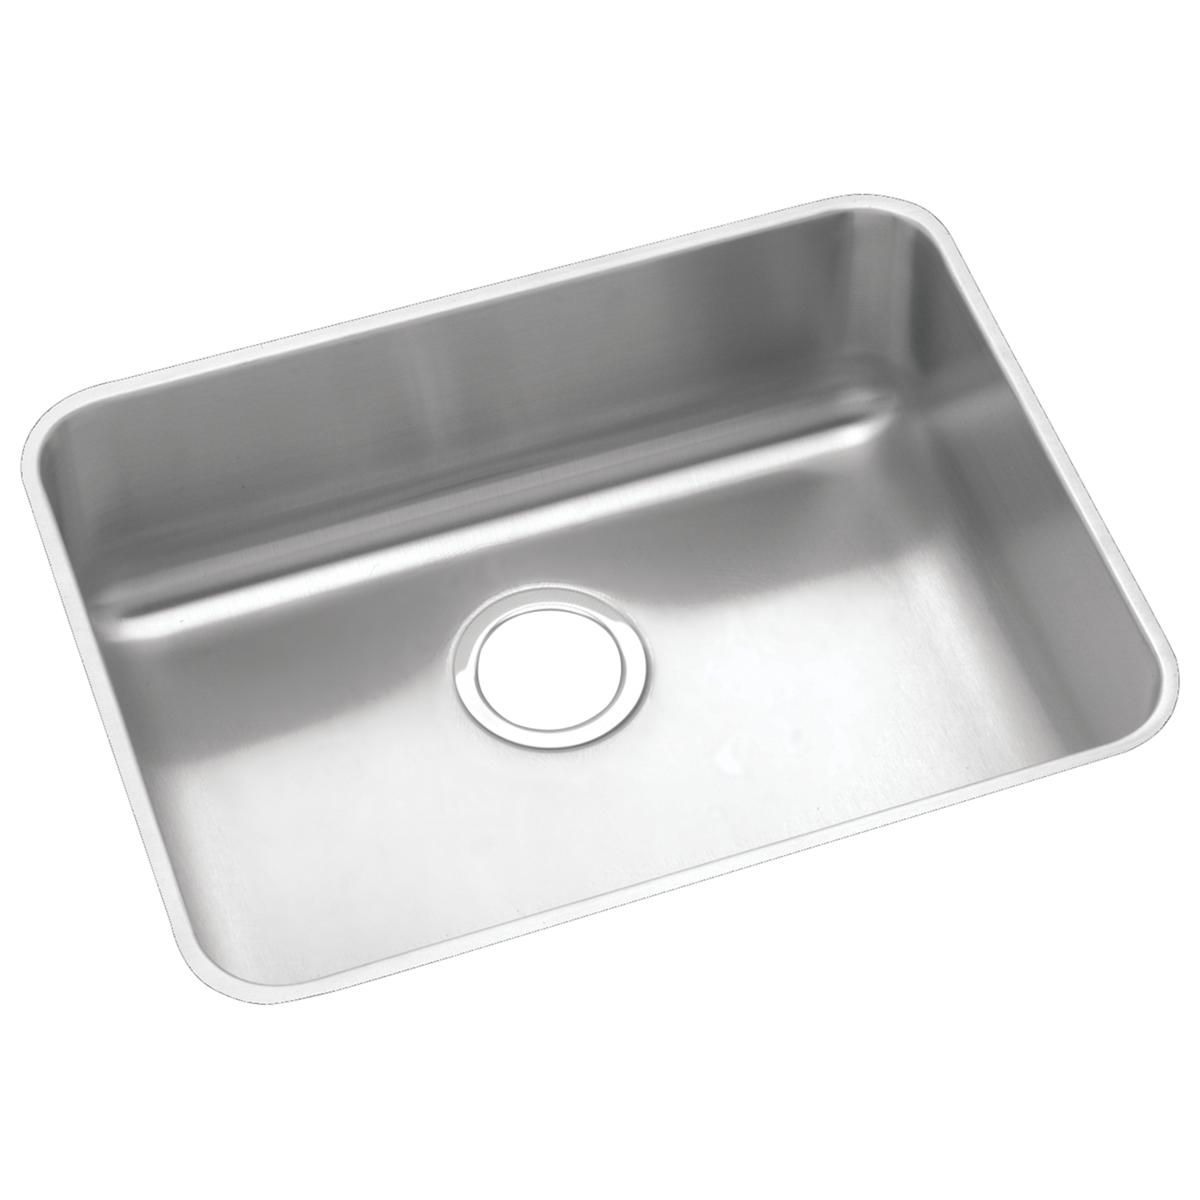 Elkay Stainless Steel Single Bowl Undermount Sink 1255724